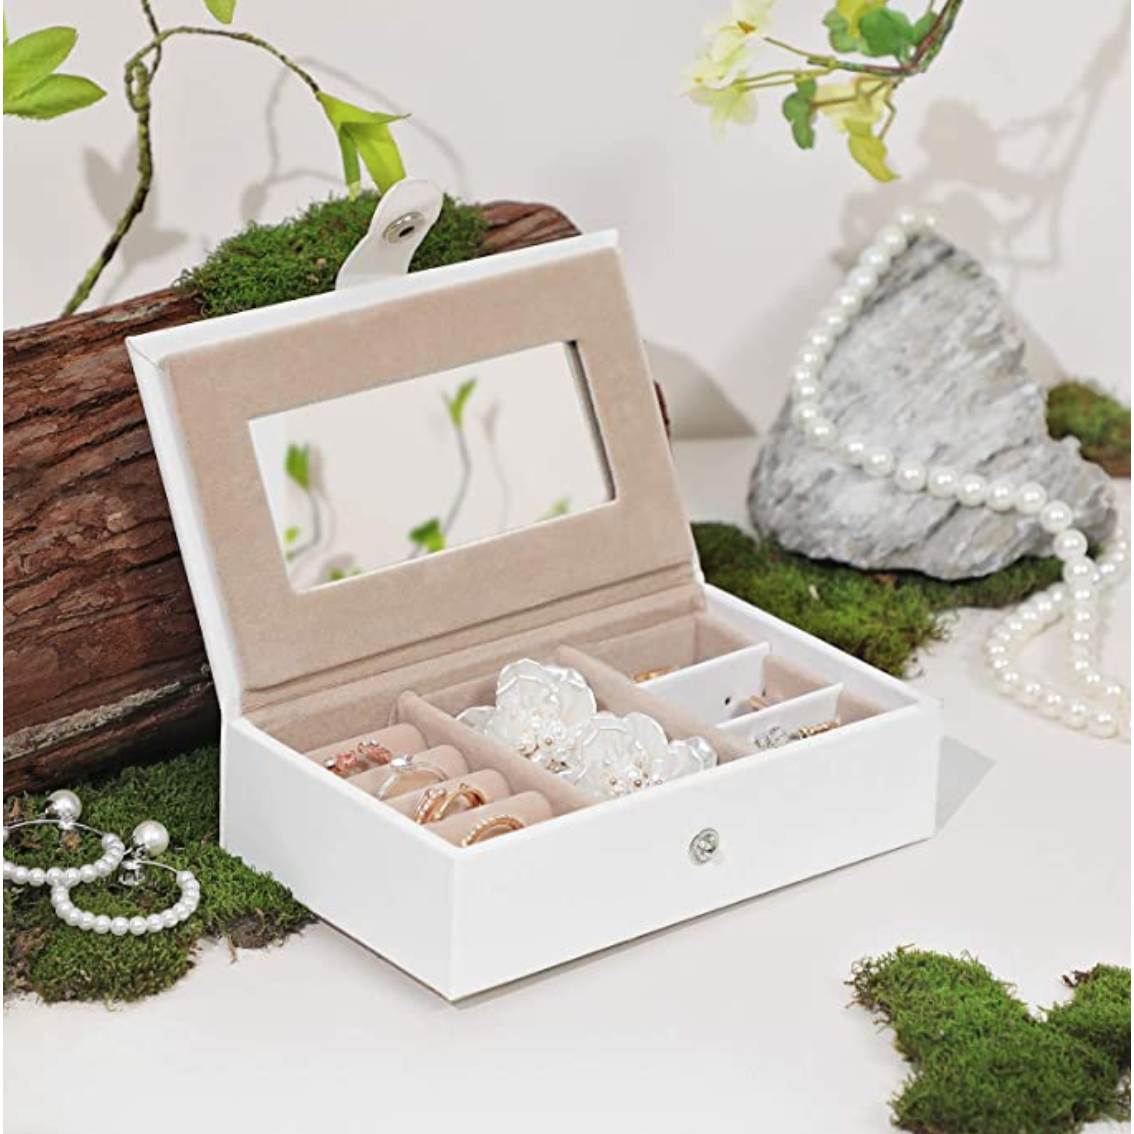 Boîte à bijoux Nancy's Burleigh - Boîte à bijoux - 2 tiroirs - Verrouillable - Miroir - Bagues - Bracelets - Boucles d'oreilles - Blanc - Rose - 26 x 18 x 17 cm